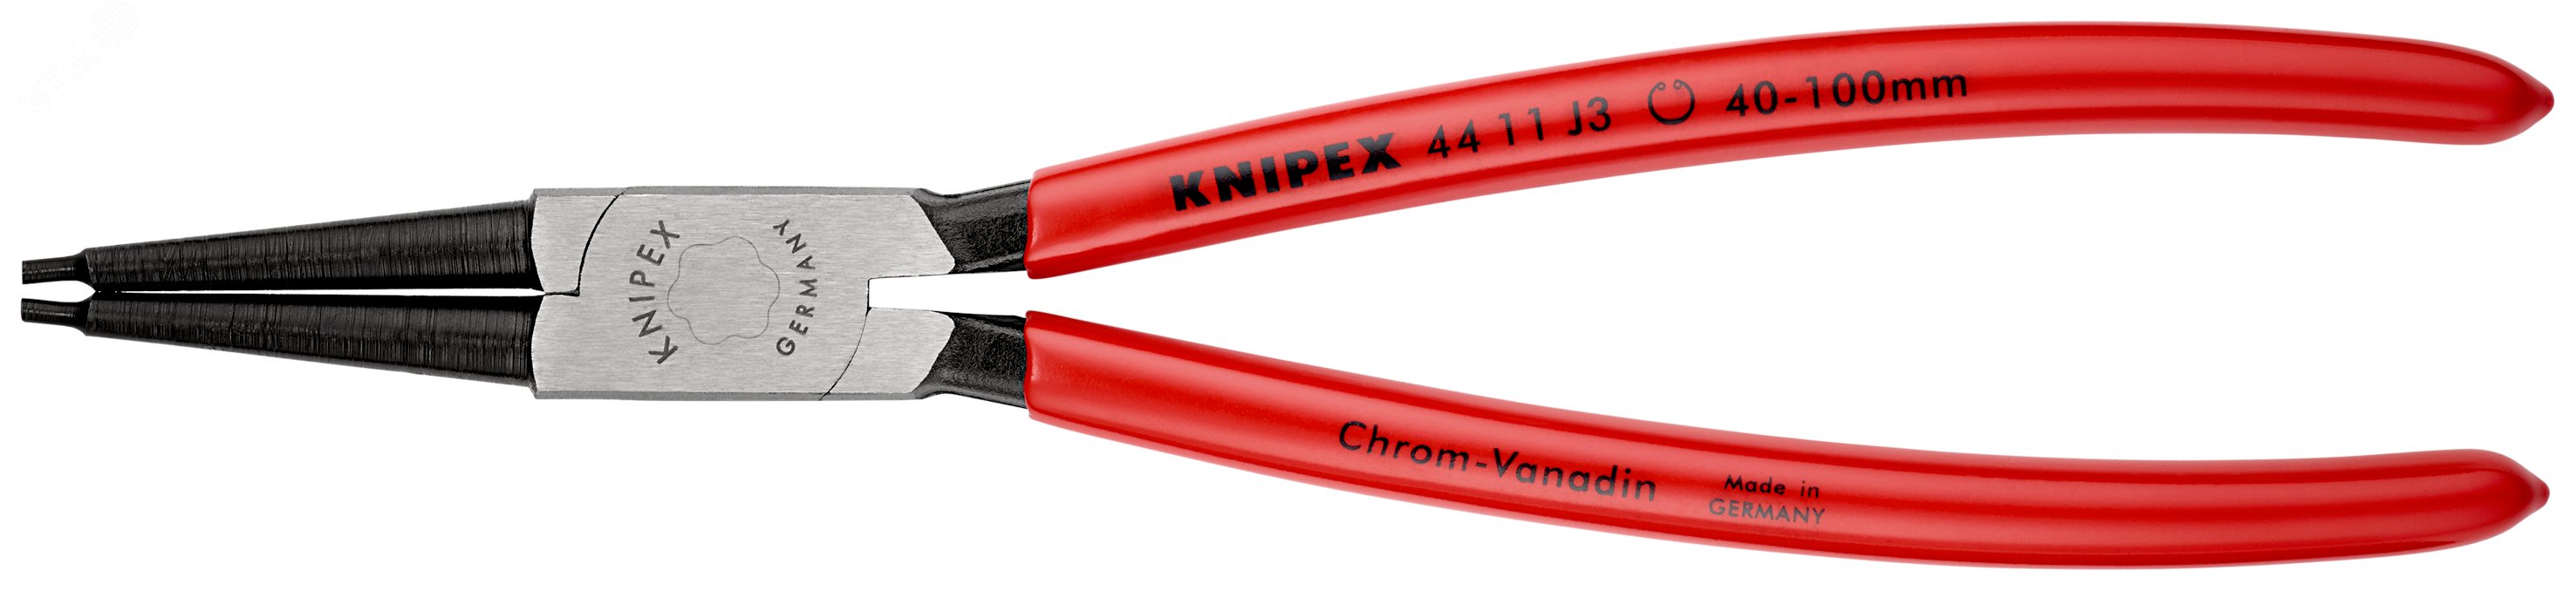 Щипцы для внутренних стопорных колец прямые губки посадочный размер 40-100мм диаметр наконечников 23мм L=225мм Cr-V черные обливные рукоятки KN-4411J3 KNIPEX - превью 3